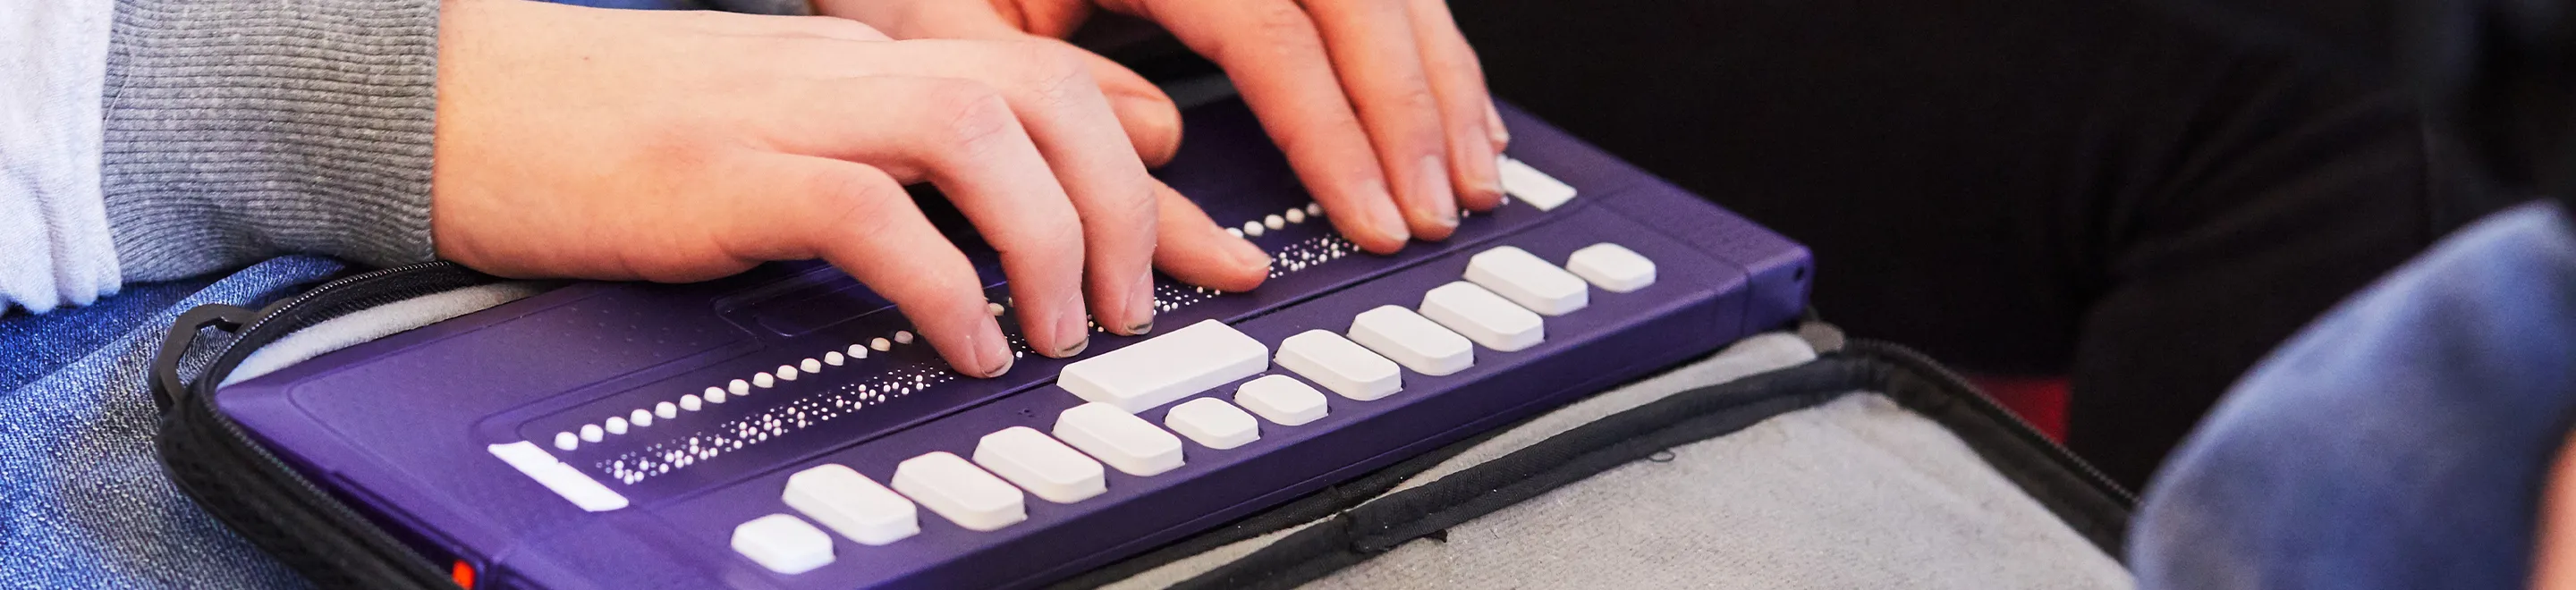 Eine Person nutzt eine Braille-Tastatur.